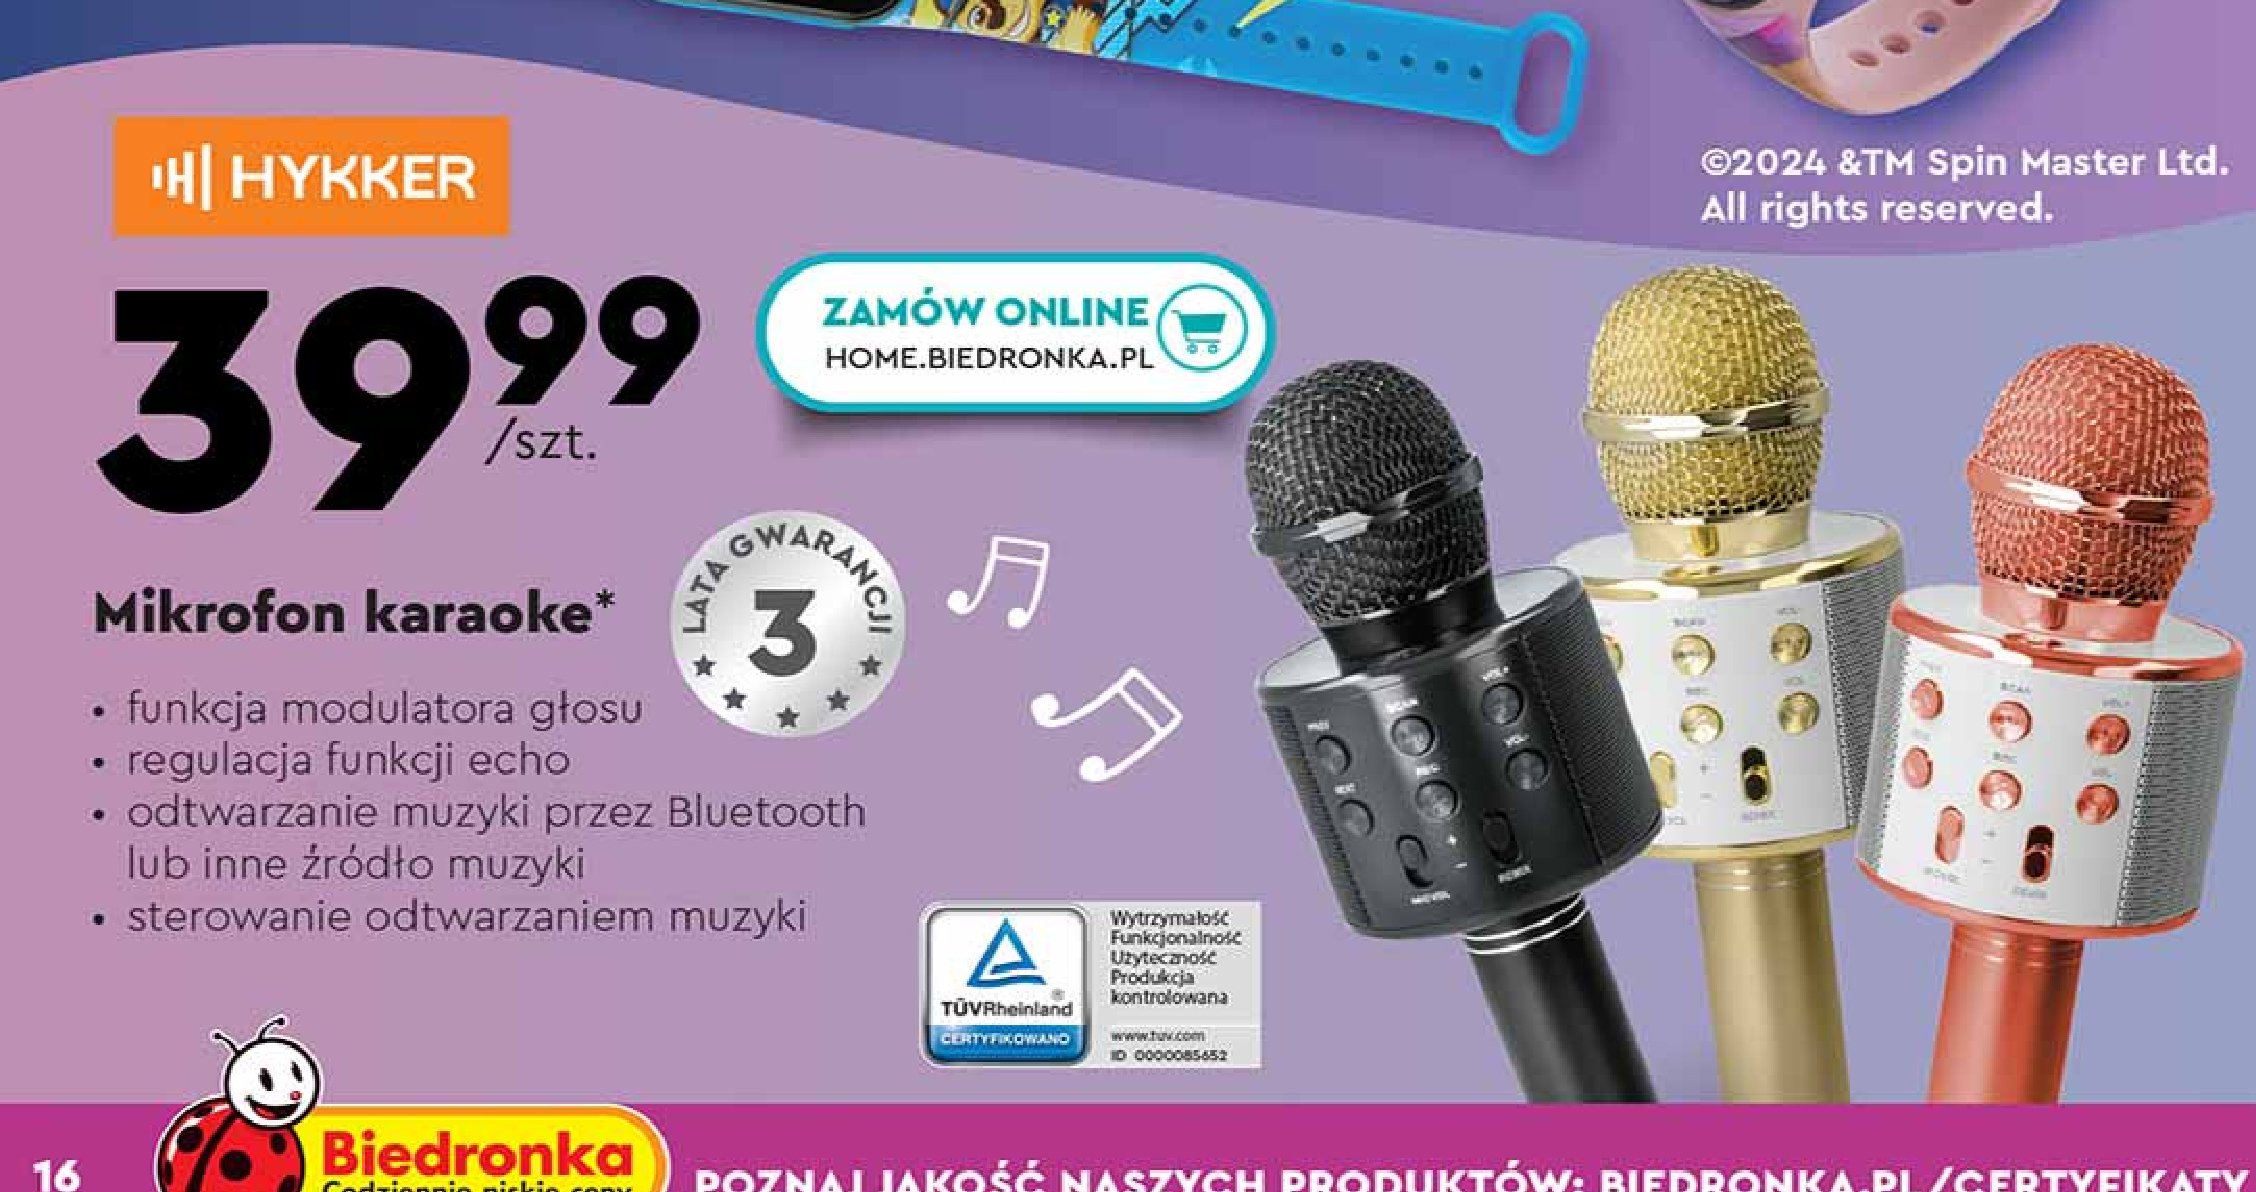 Mikrofon karaoke bezprzewodowy Hykker promocja